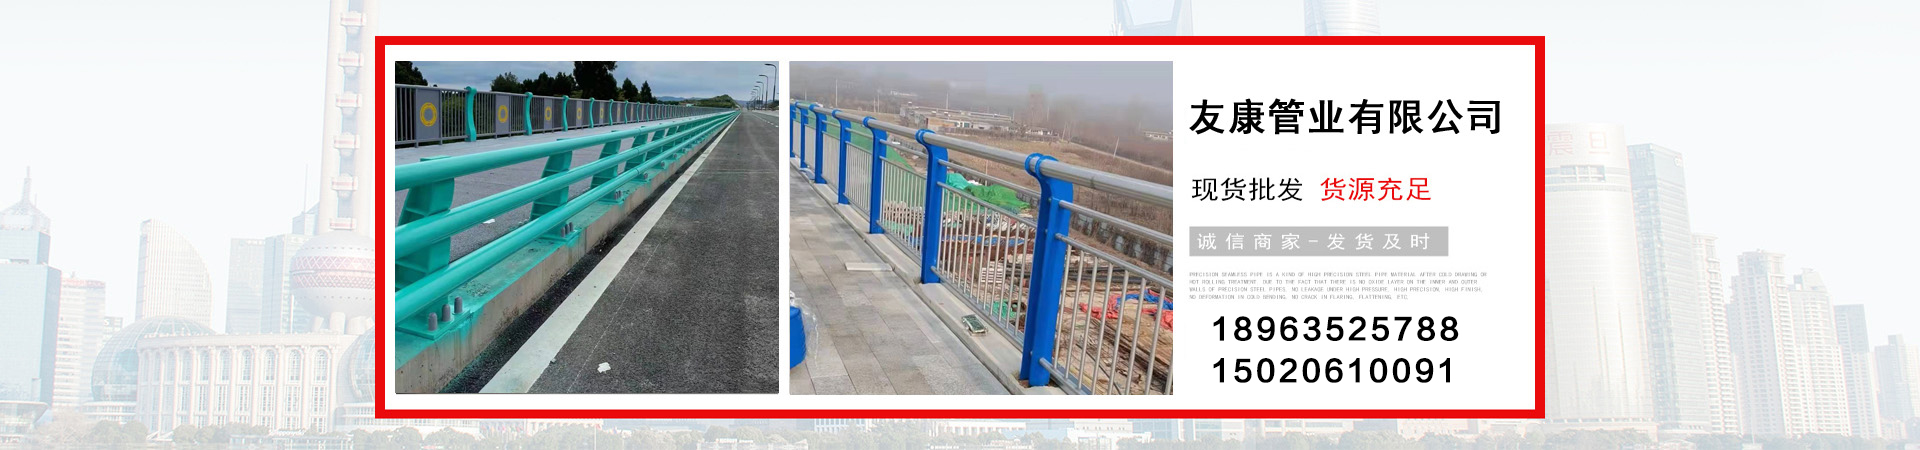 不锈钢护栏、新疆本地不锈钢护栏、新疆、新疆不锈钢护栏